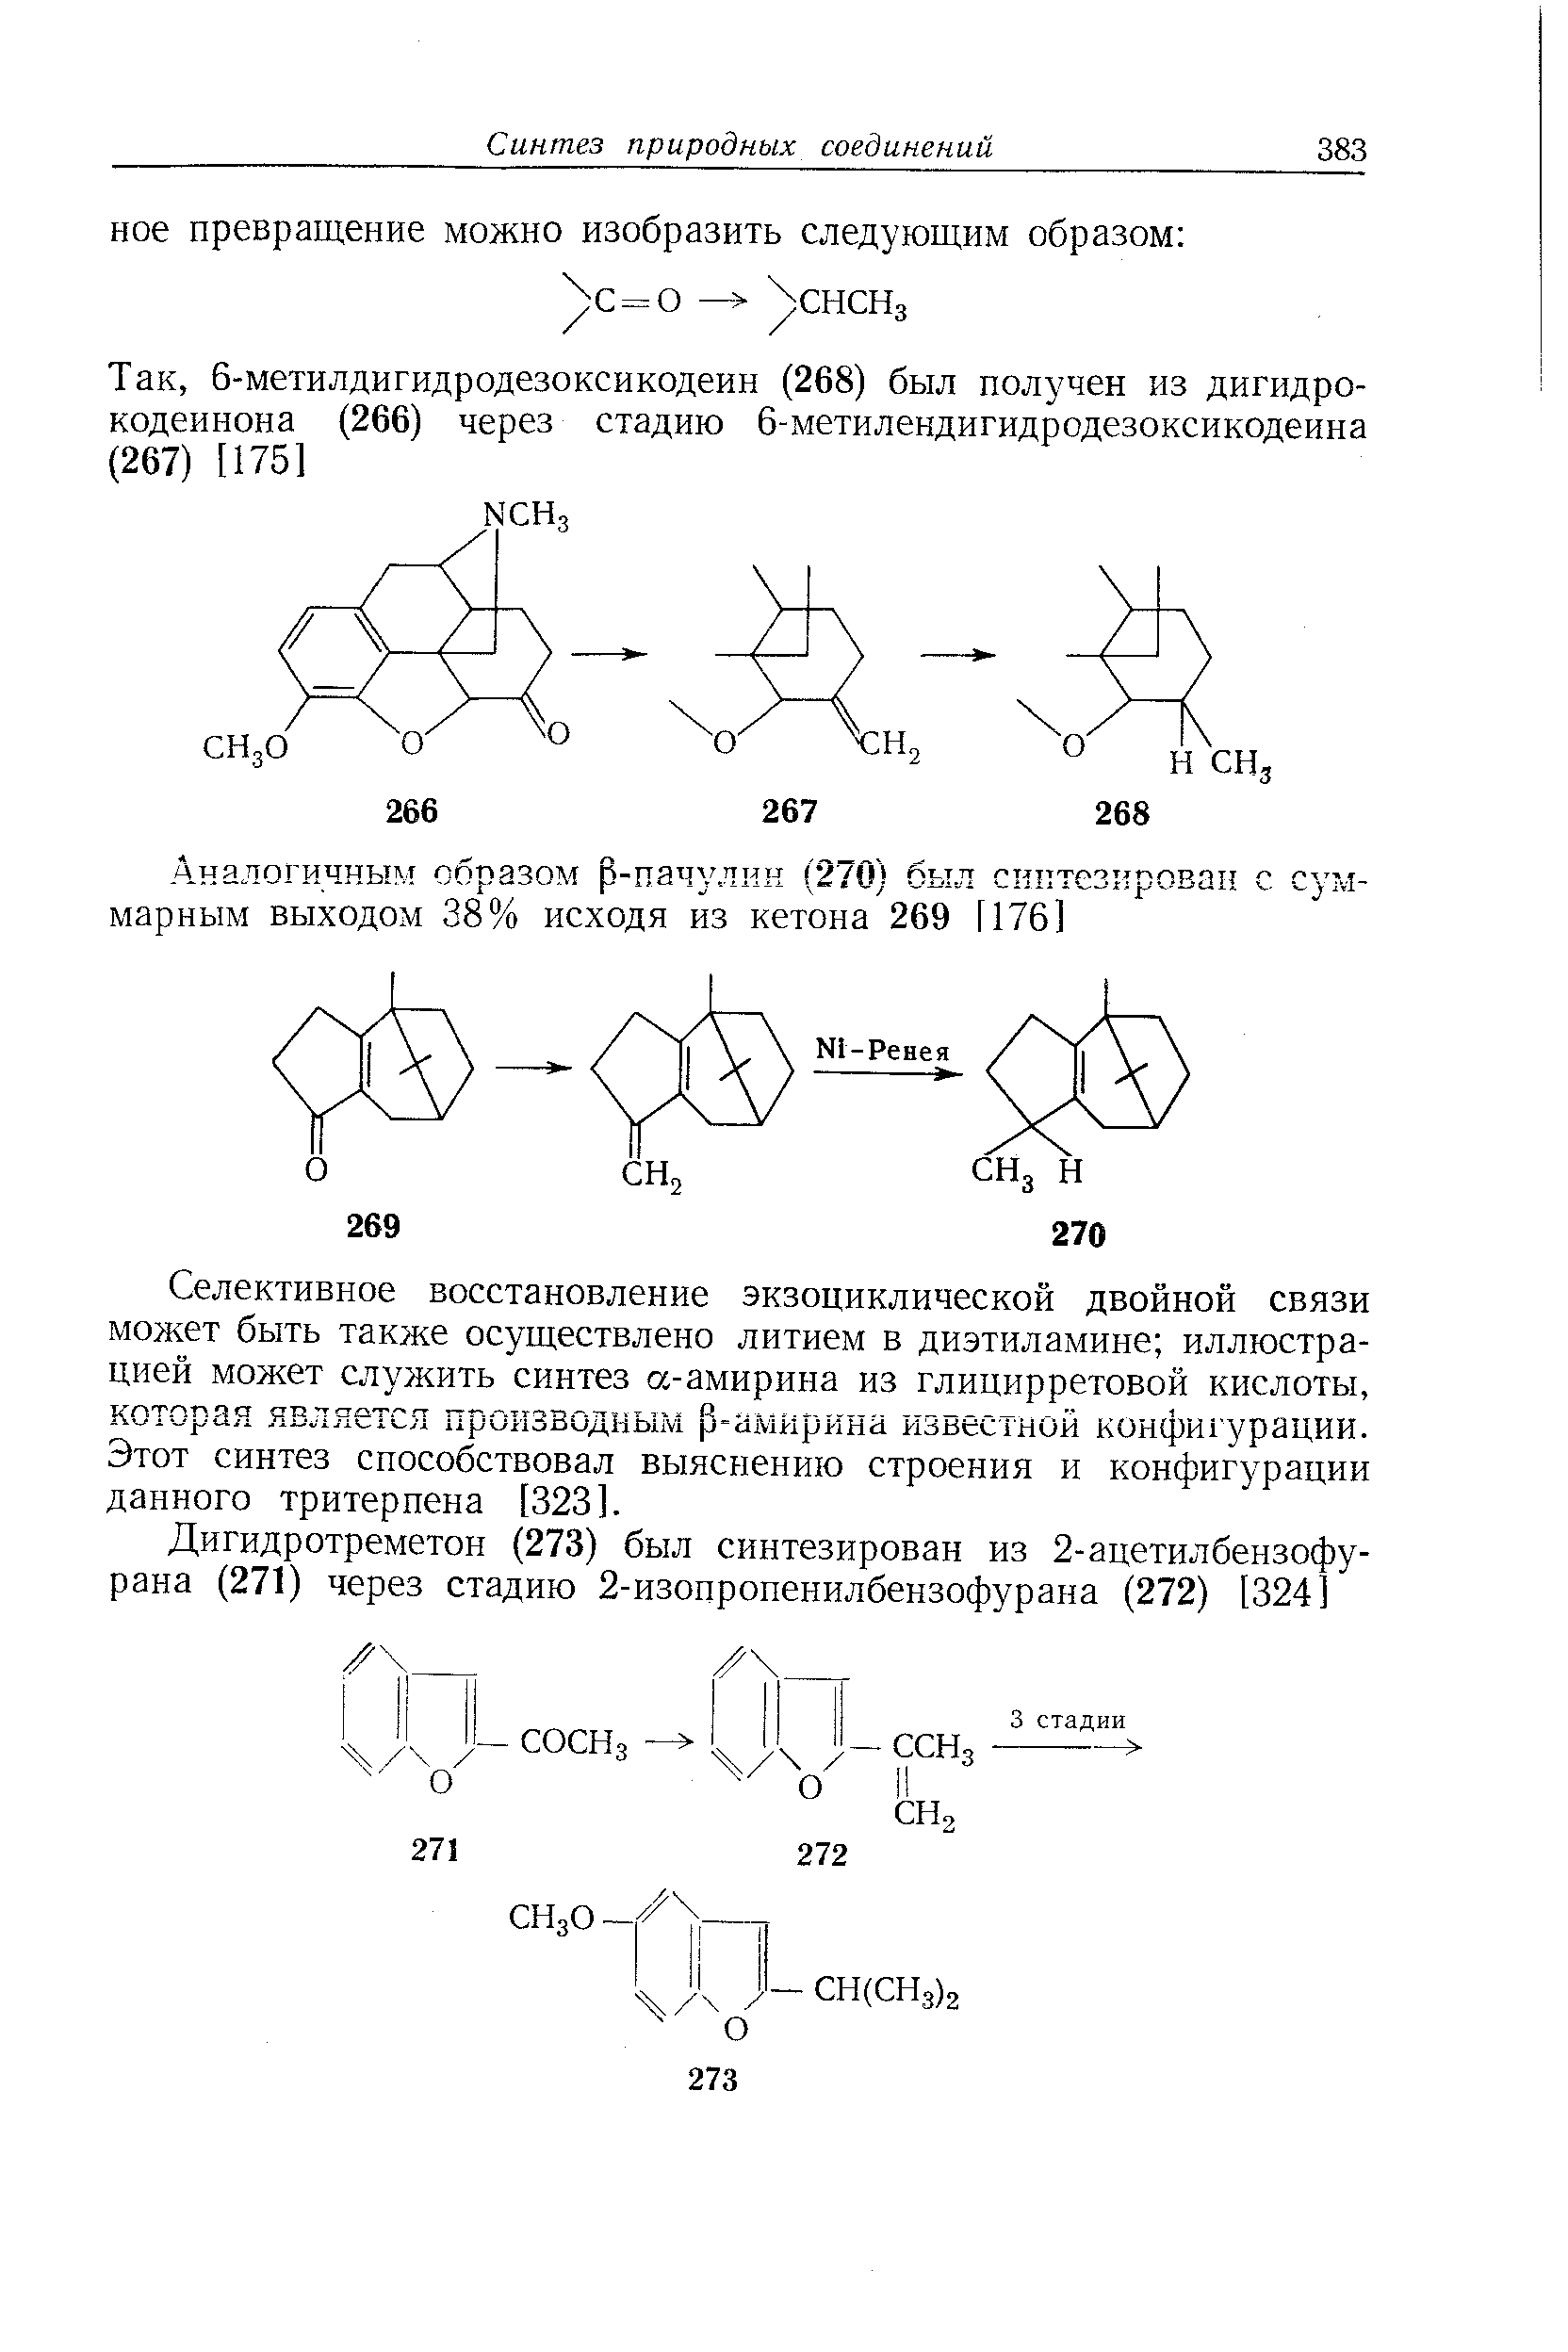 Селективное восстановление экзоциклической двойной связи может быть также осуществлено литием в диэтиламине иллюстрацией может служить синтез а-амирина из глицирретовой кислоты, которая является производным р-амирина известной конфигурации. Этот синтез способствовал выяснению строения и конфигурации данного тритерпена [323].